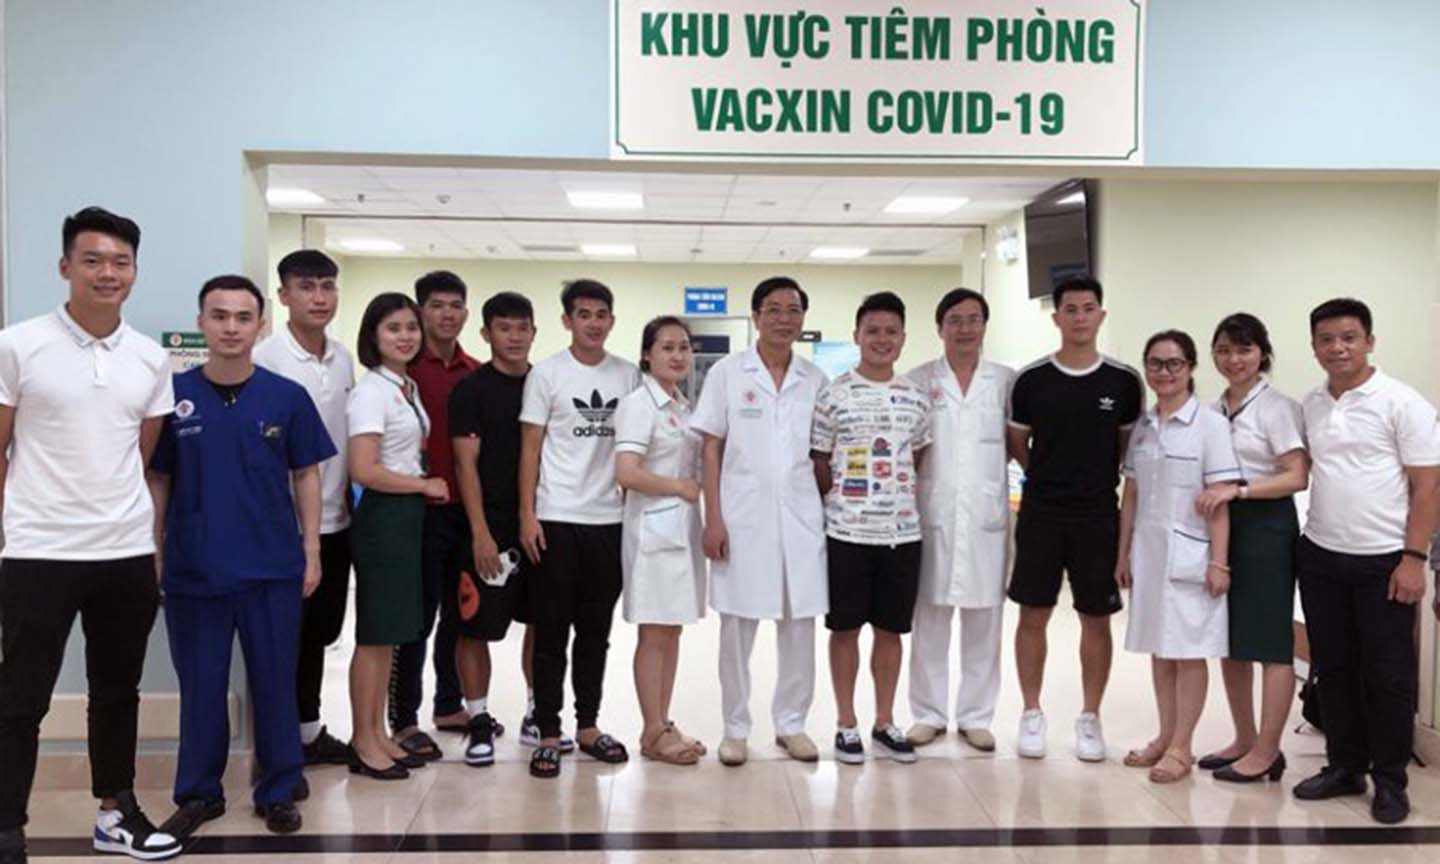 Các cầu thủ chụp ảnh lưu niệm với các bác sĩ Bệnh viện Trung ương Quân đội 108 sau khi hoàn thành tiêm phòng vắc xin phòng COVID-19.